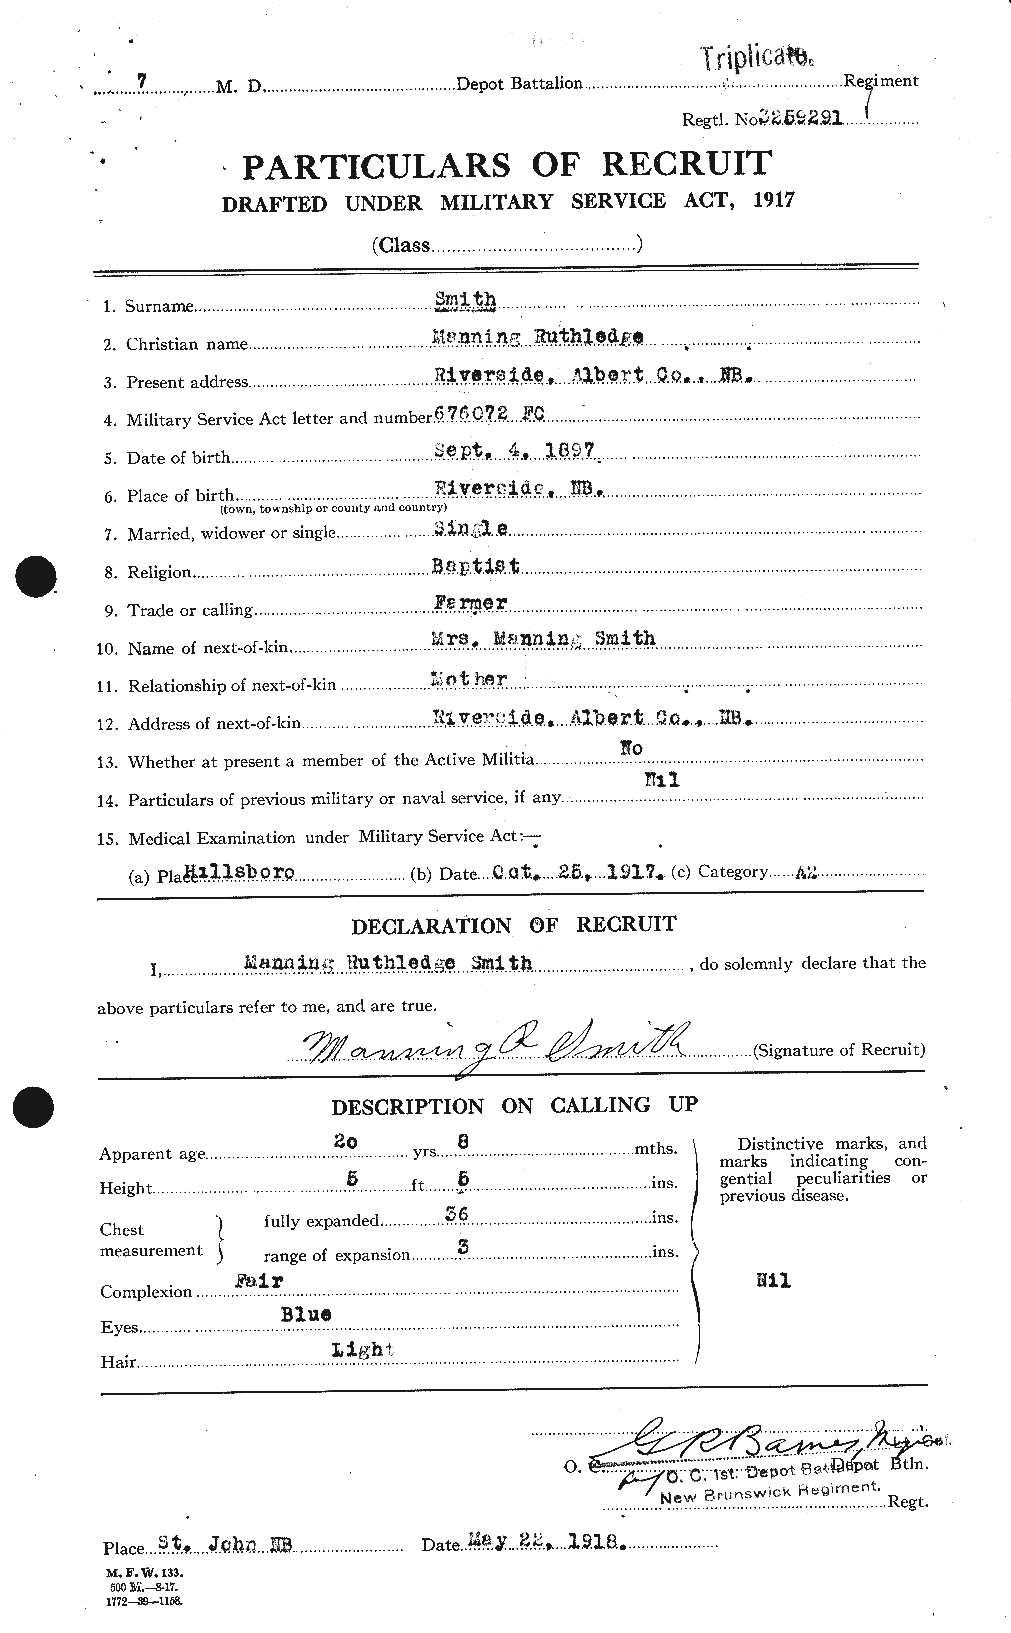 Dossiers du Personnel de la Première Guerre mondiale - CEC 104790a